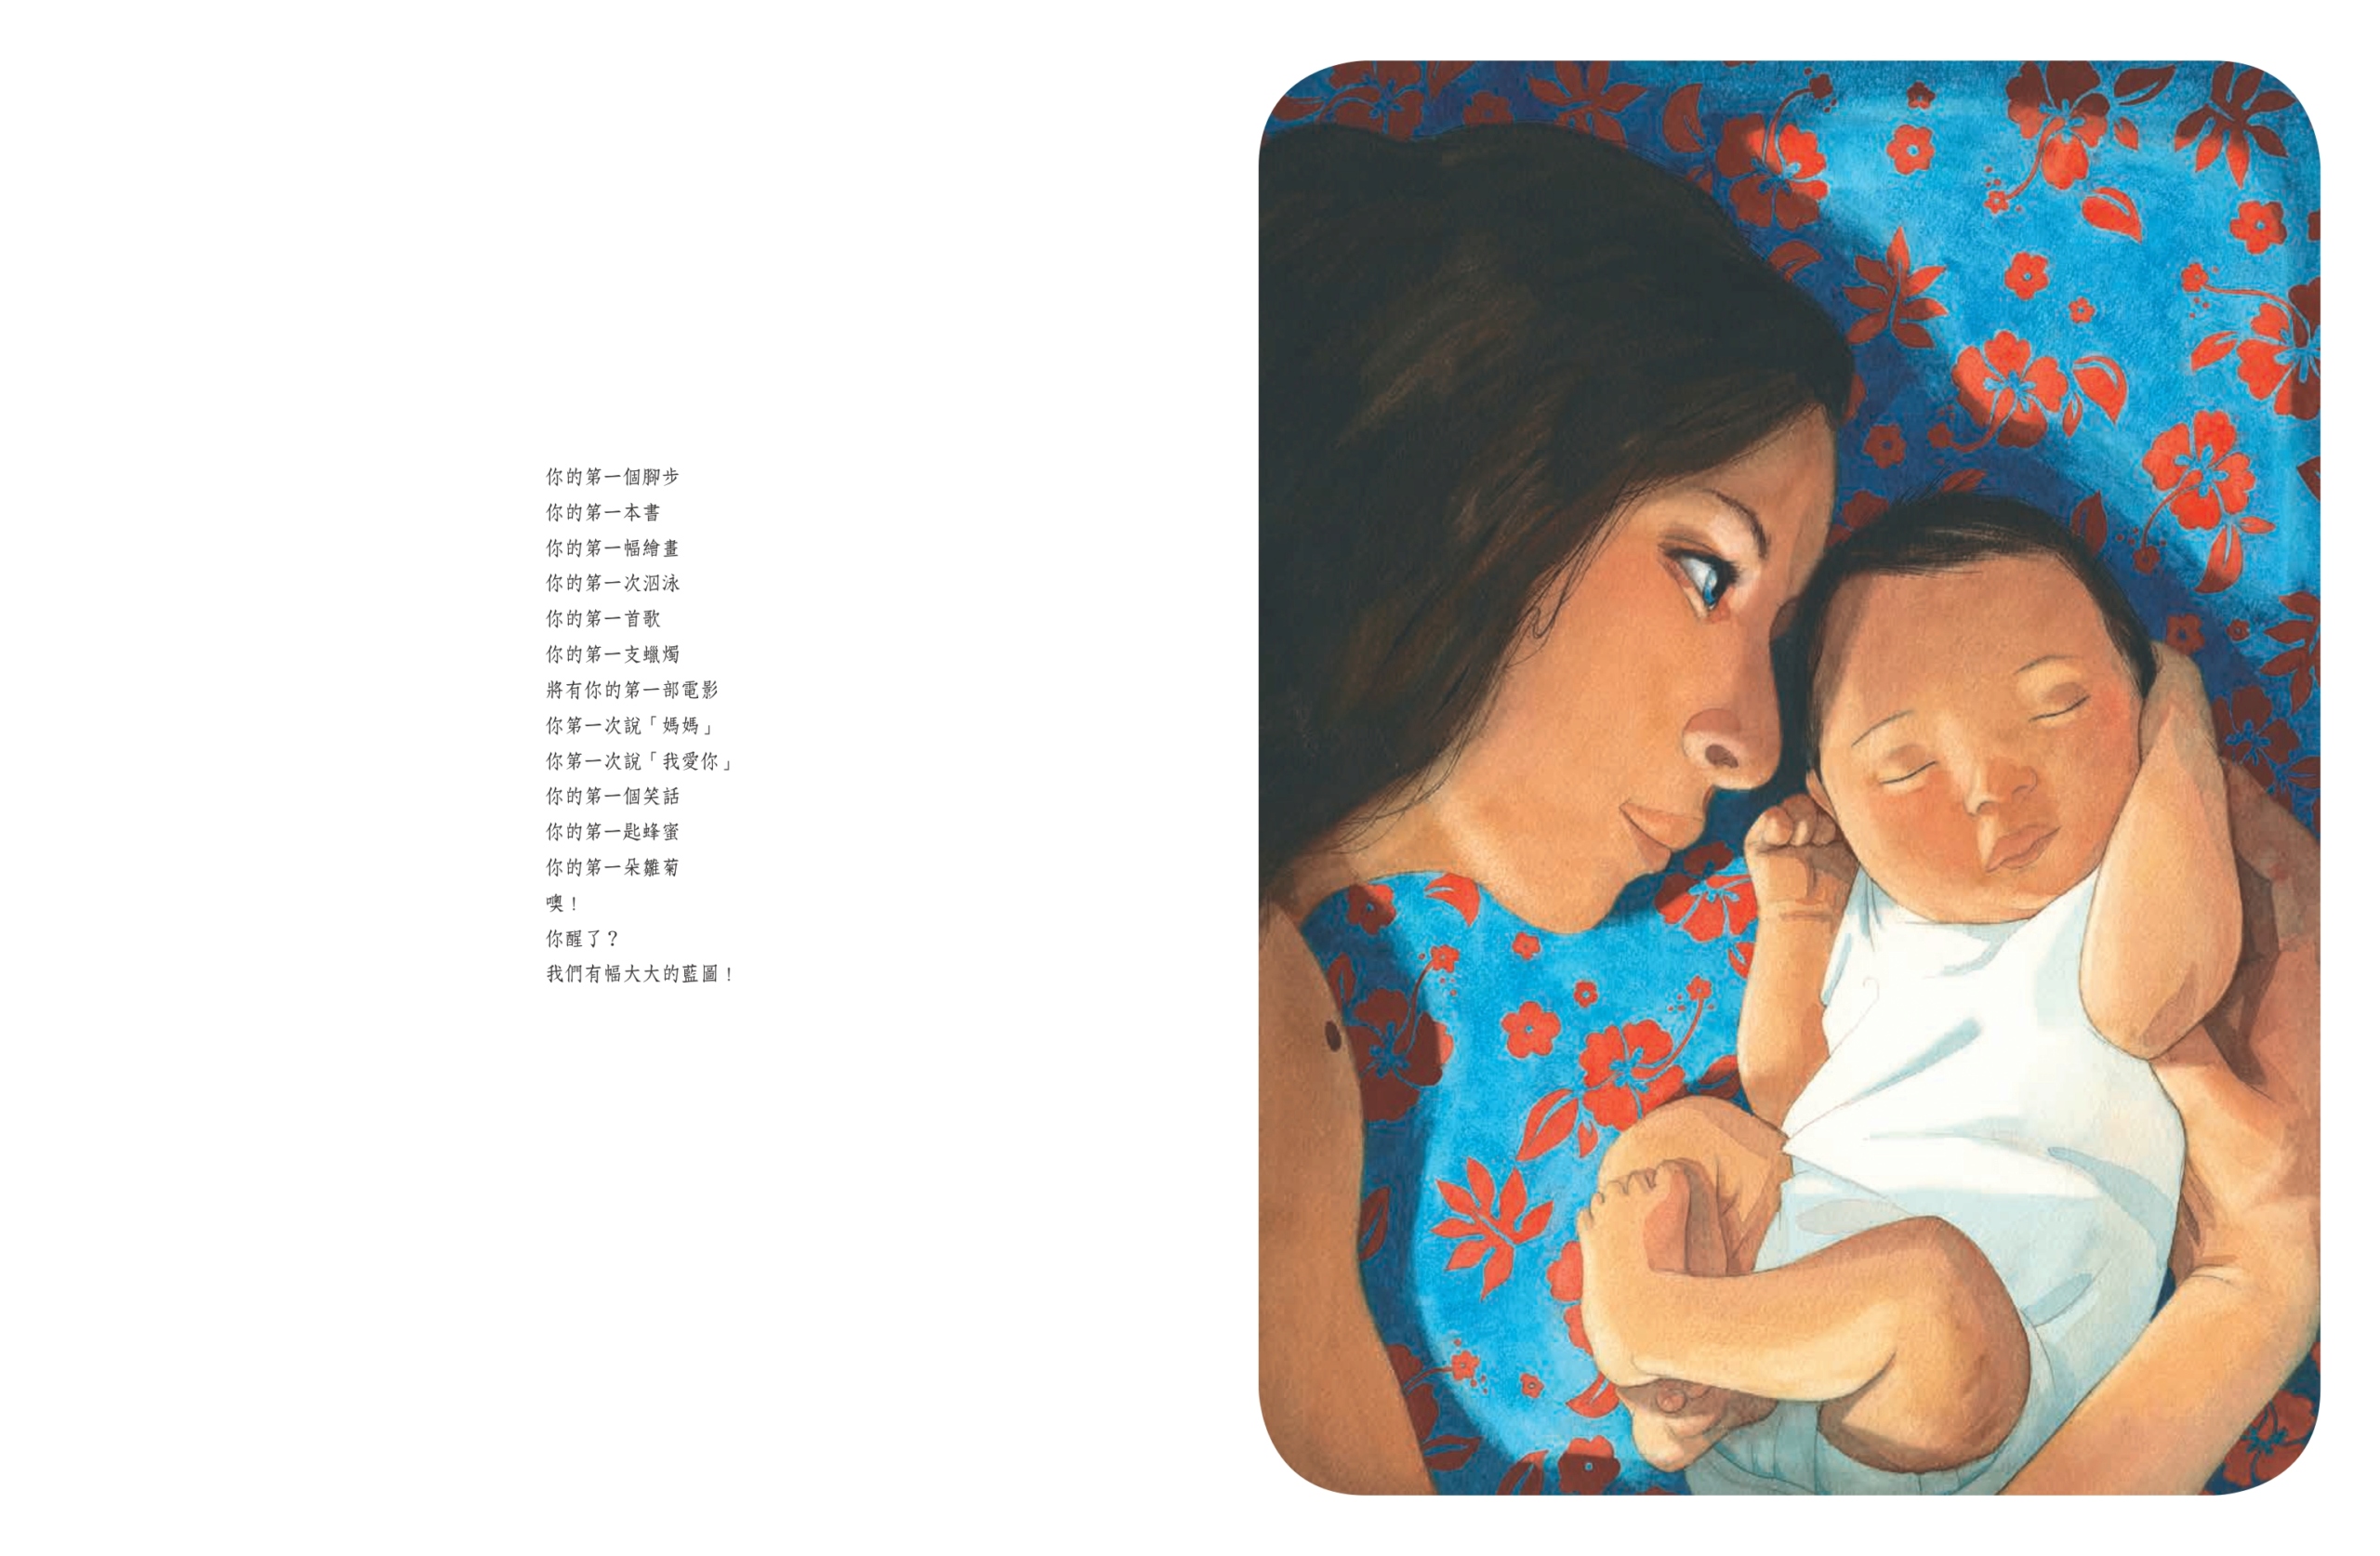 母親 - 母親節暖心首選繪本《母親》 全球數十億人口中不同國度、不同生命階段的女性 都具有的共同身分「媽媽」 Cuioae14